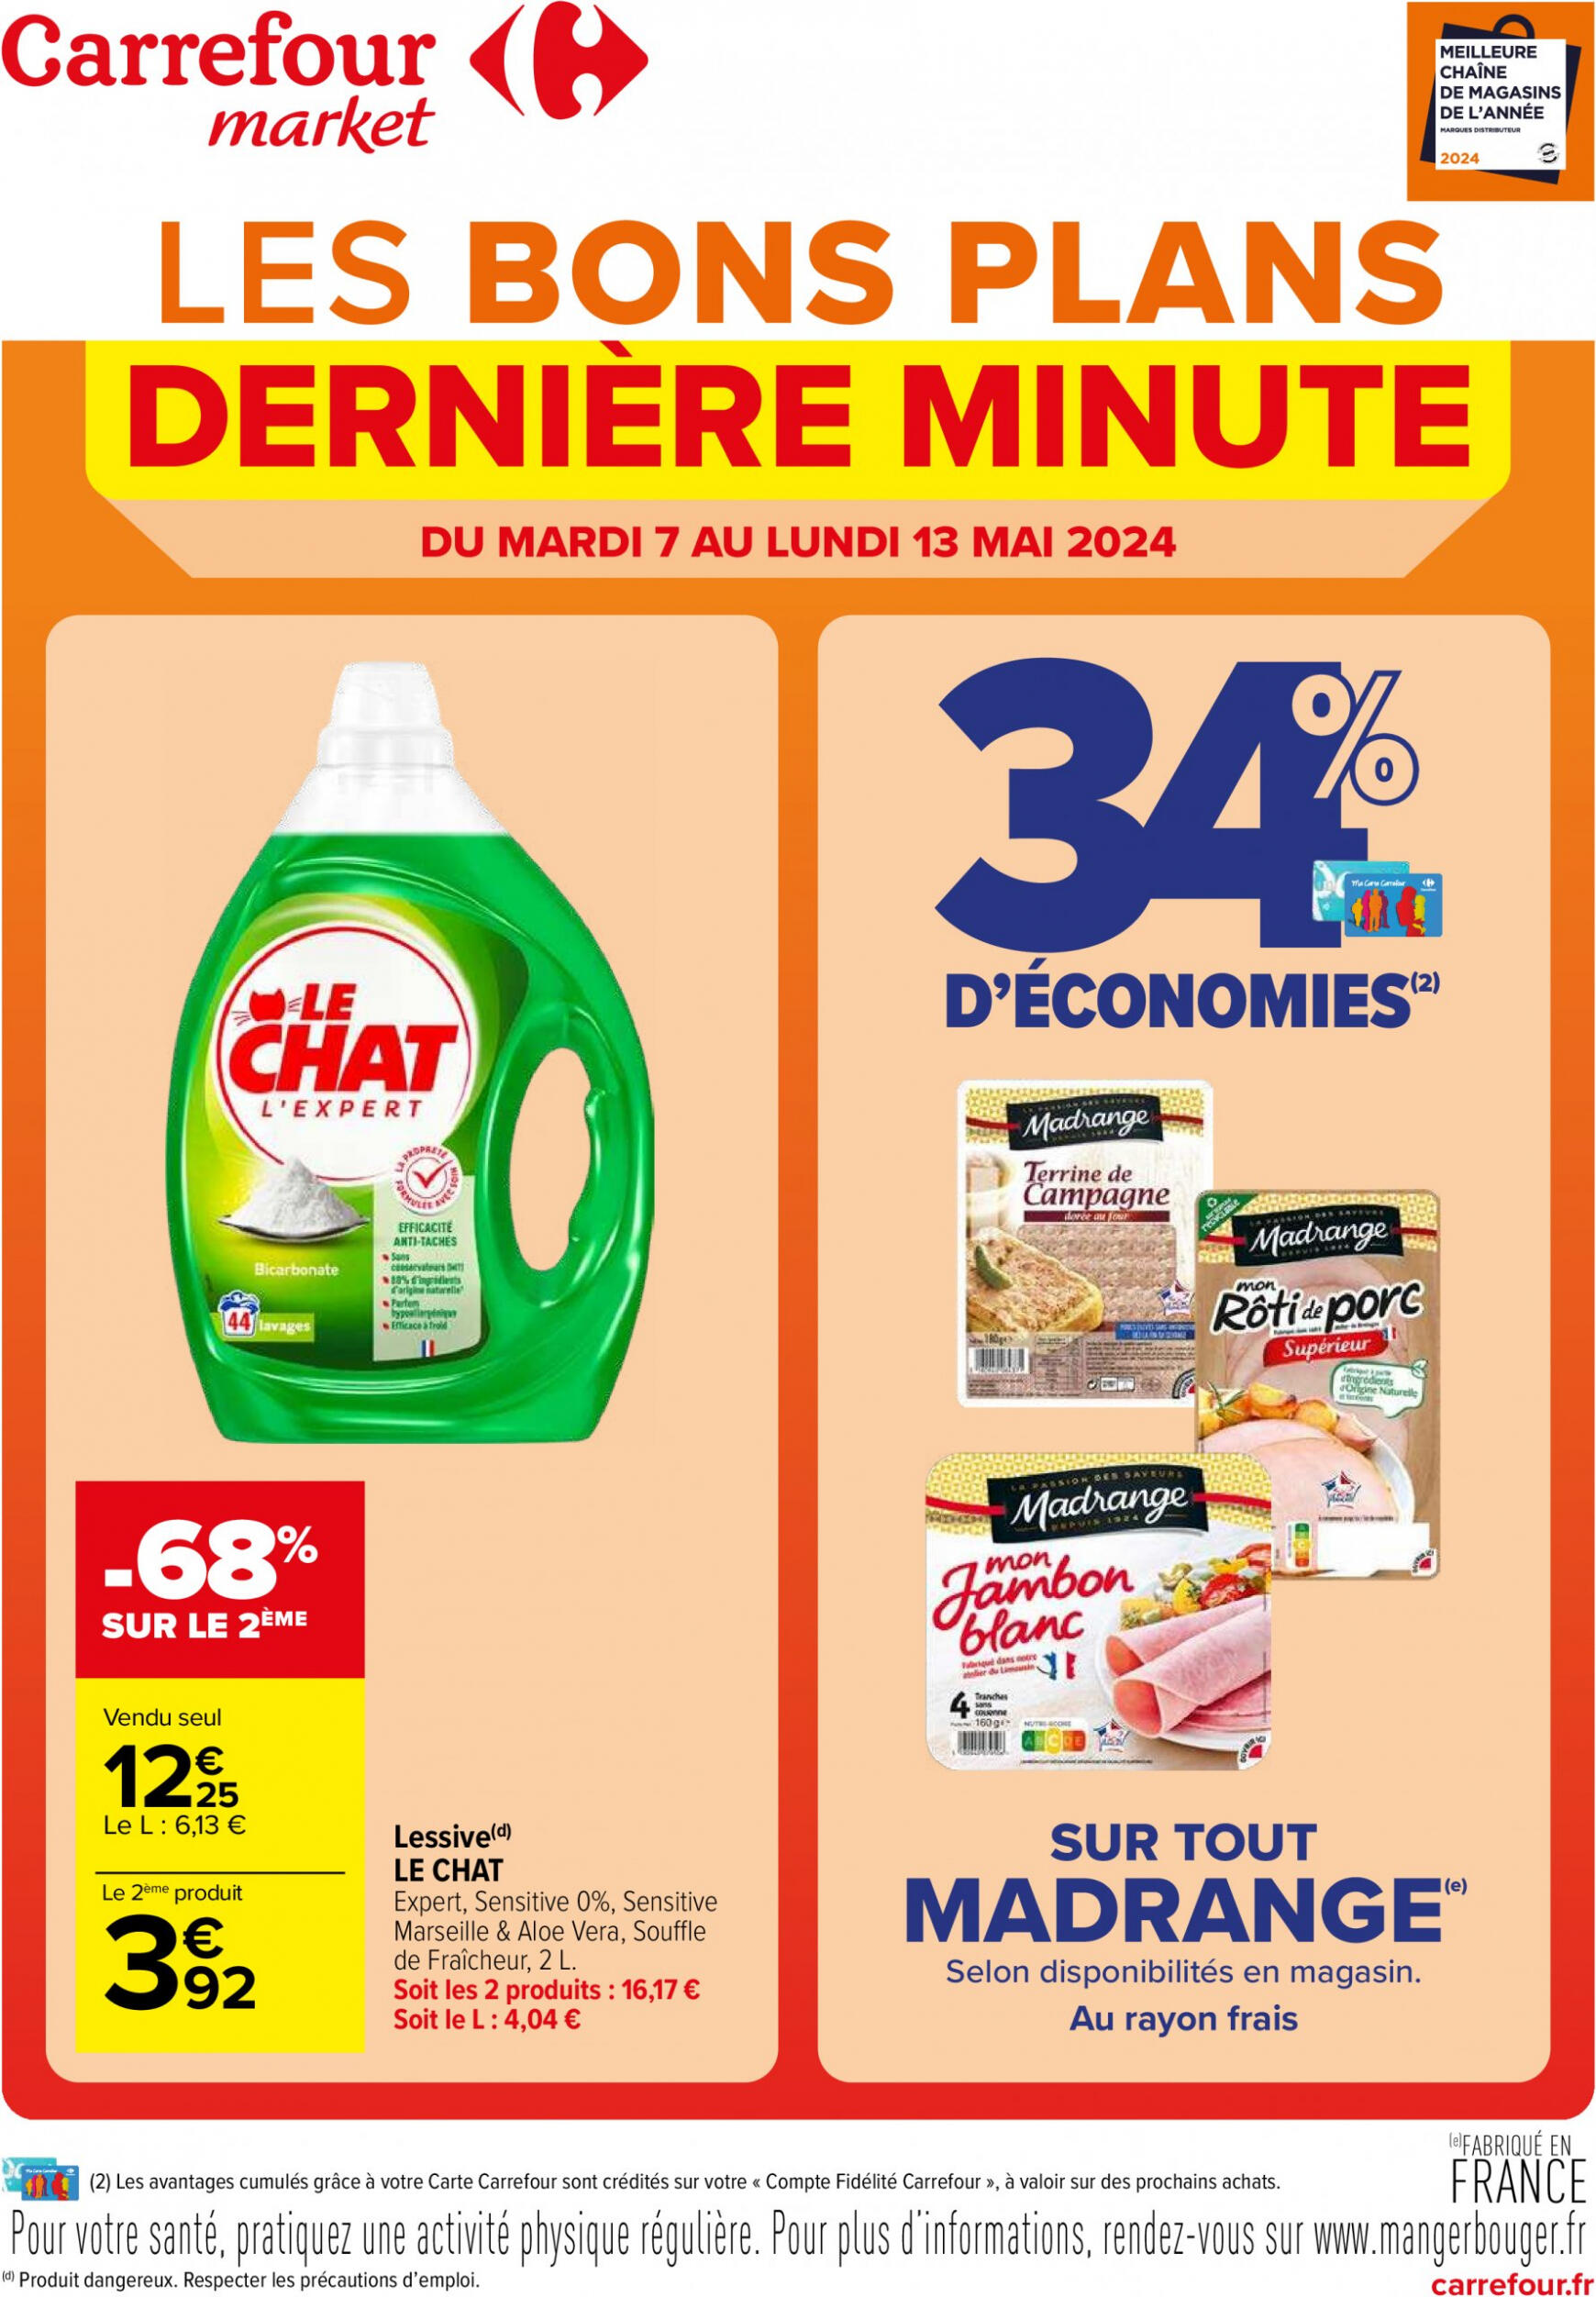 carrefour-market - Prospectus Carrefour Market - Les bons plans derniére minute actuel 07.05. - 13.05.